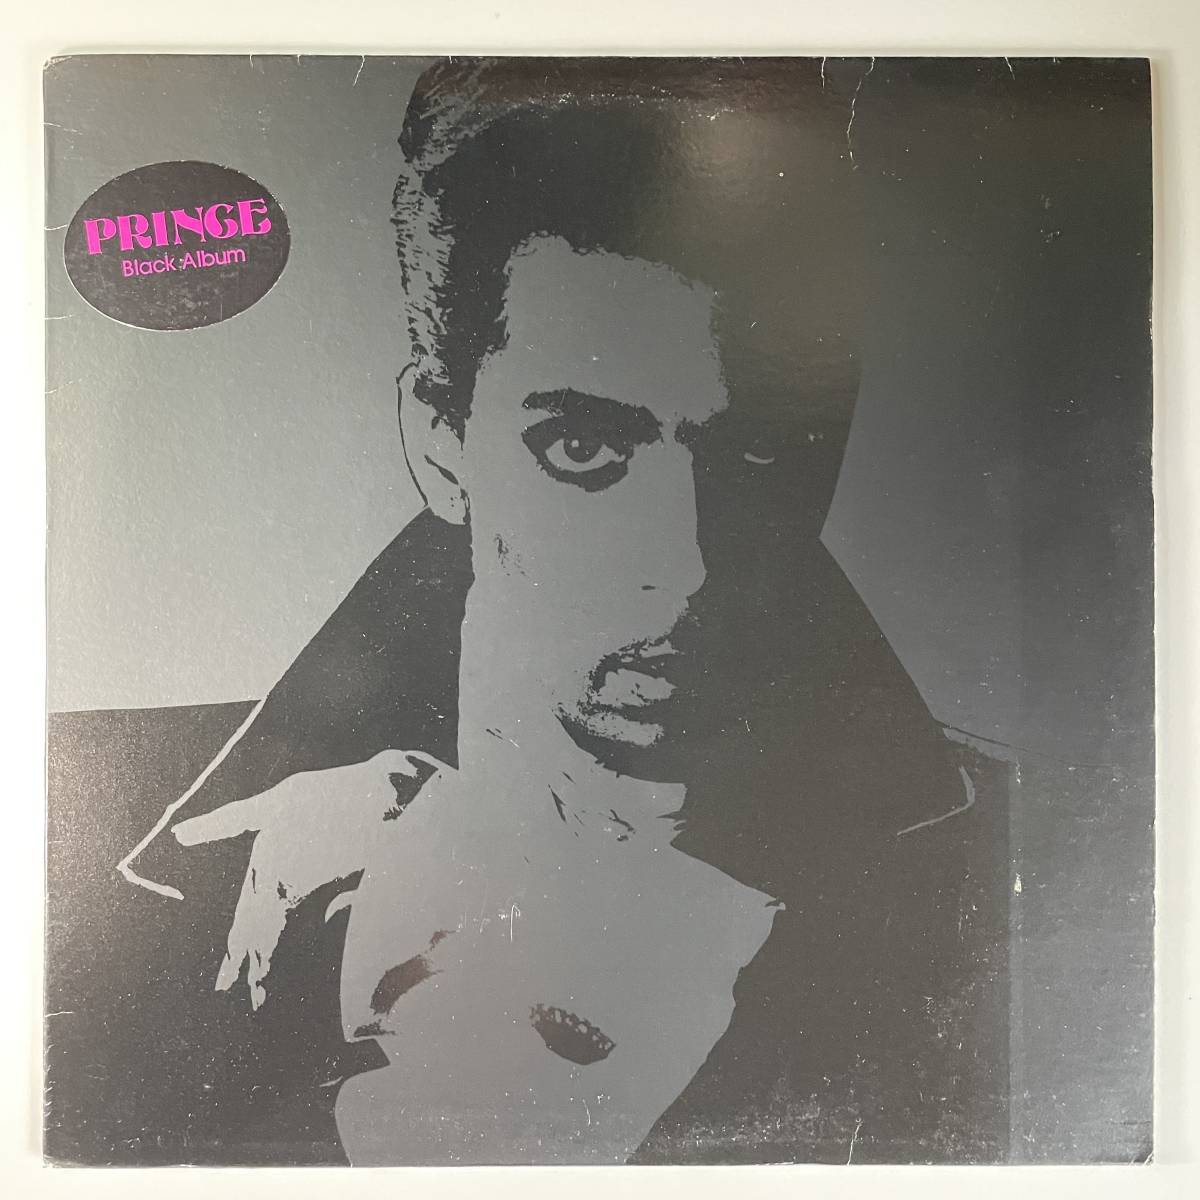 ヤフオク! -「prince black album」(レコード) の落札相場・落札価格